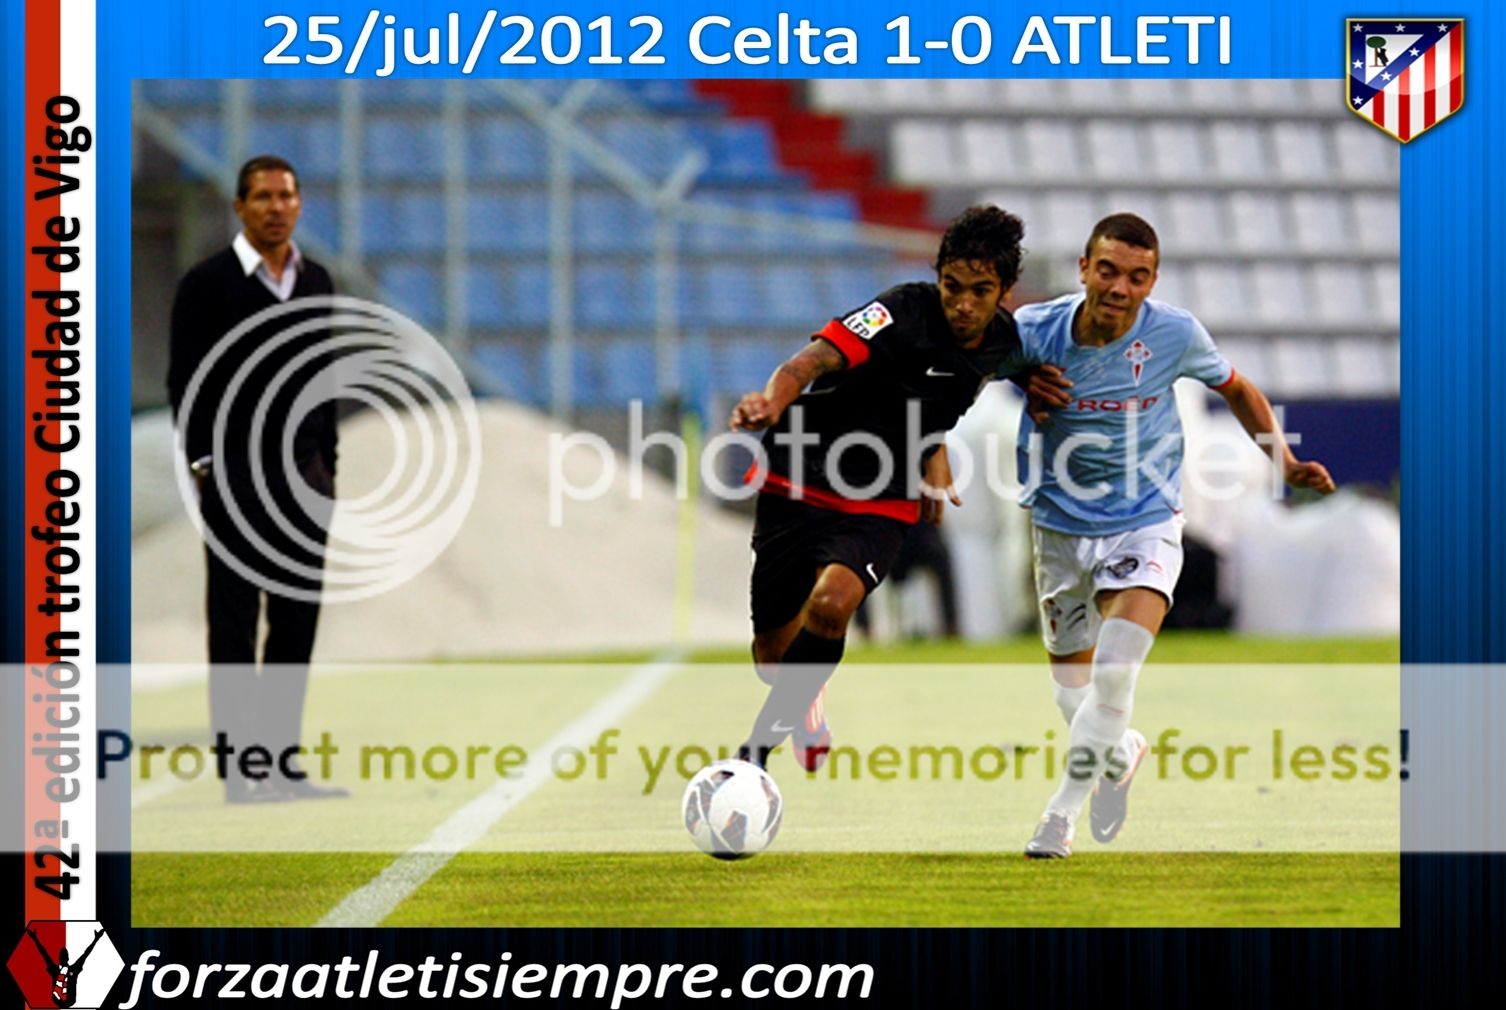 Celta 1-0 Atlético - El Atlético decepciona ante un Celta que se lleva ... 008Copiar-2